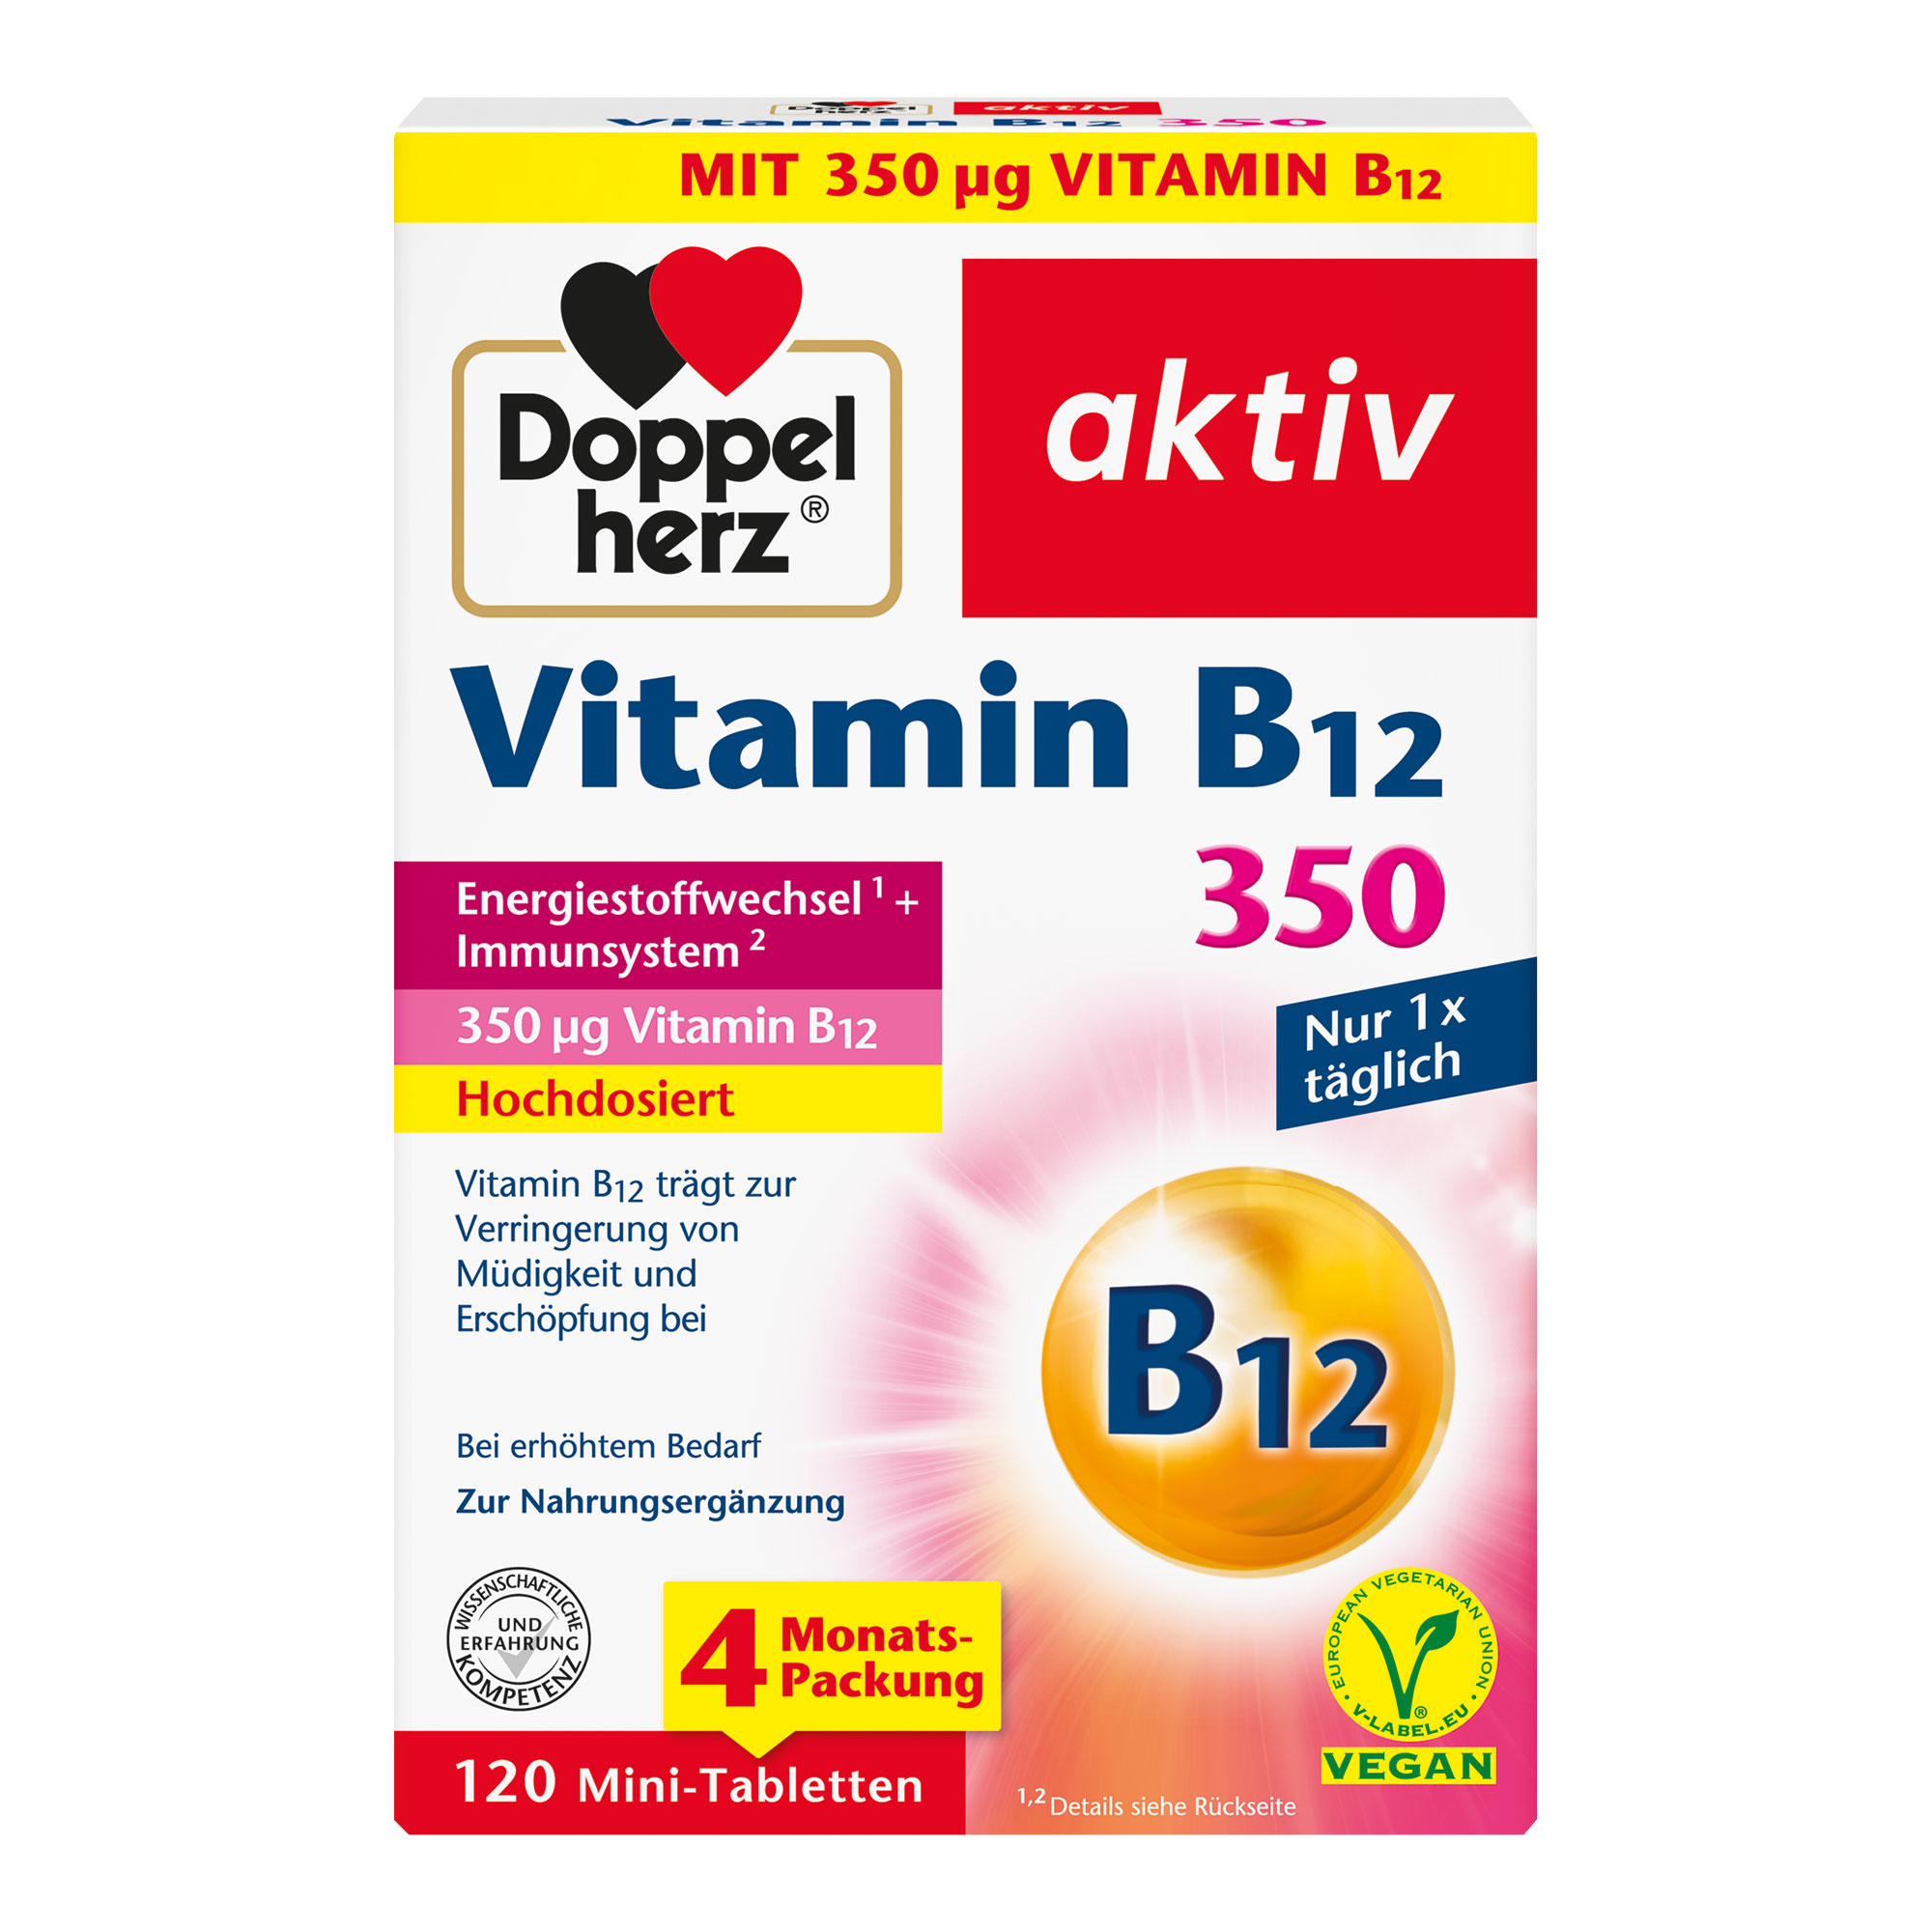 Nahrungsergänzungsmittel mit hochdosiertem Vitamin B12. Für Energiestoffwechsel und Immunsystem.